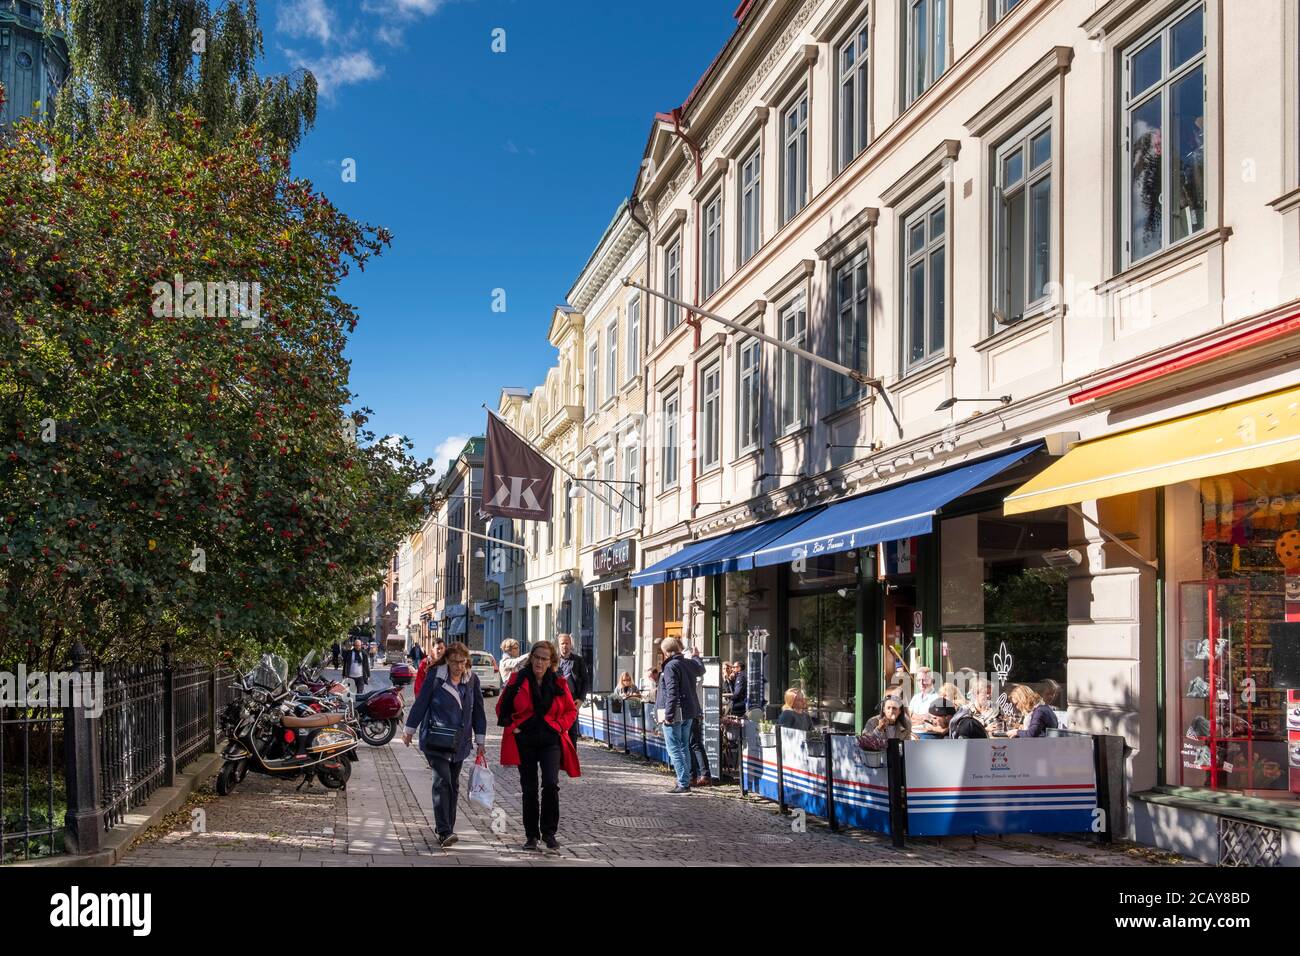 Menschen und Cafés in der Innenstadt, Göteborg, Schweden Stockfoto